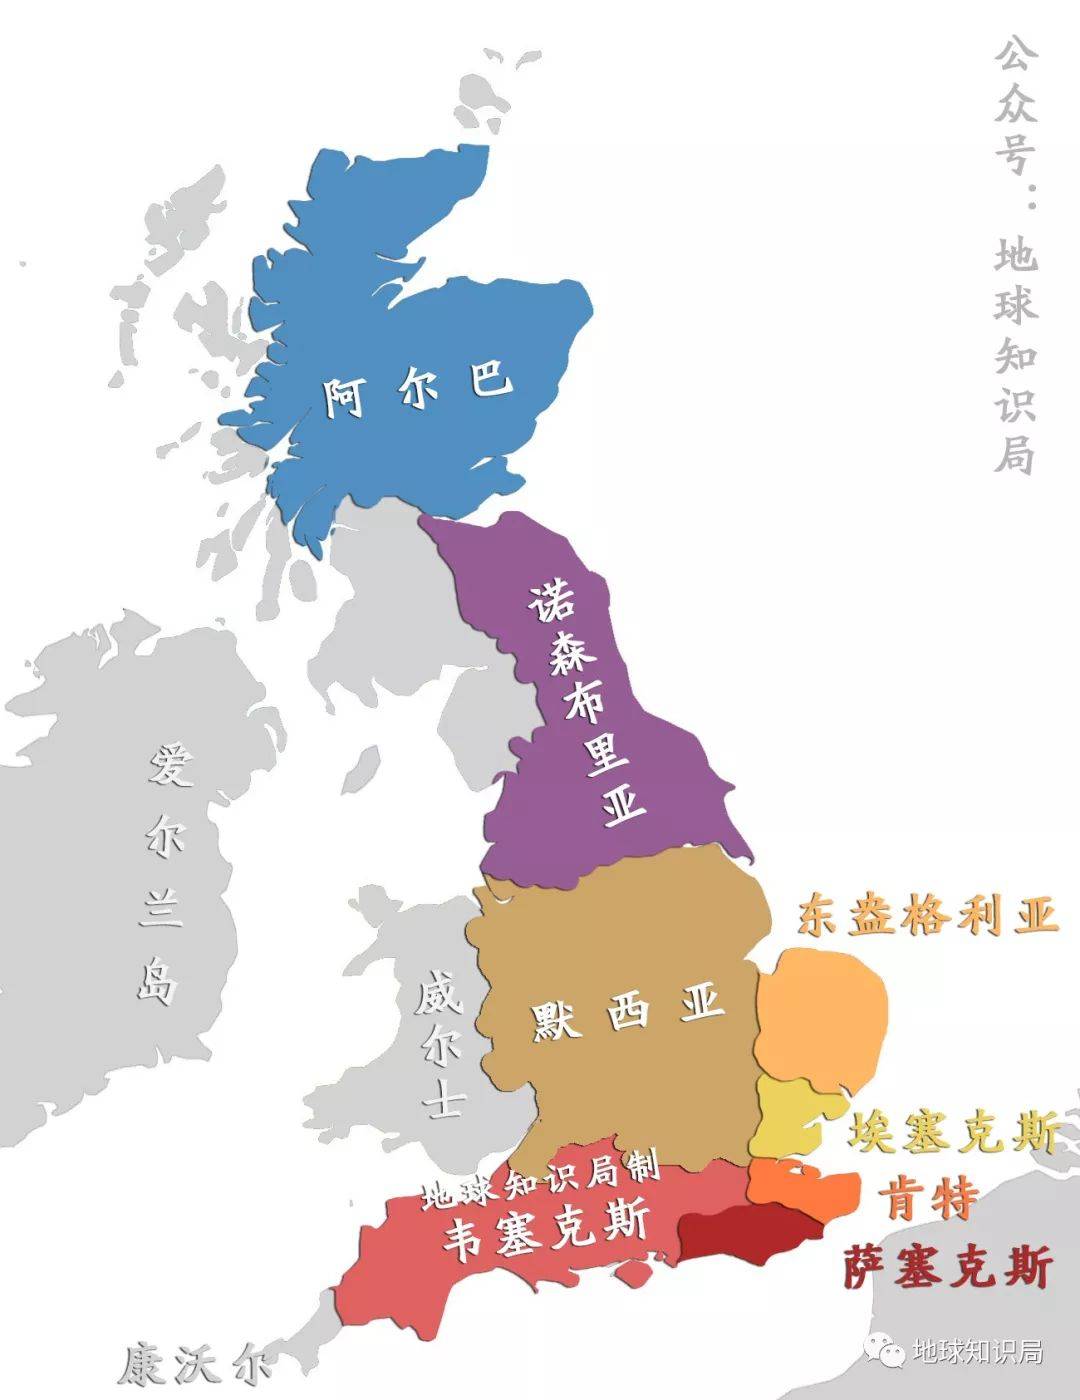 英国地图 七国时代图片